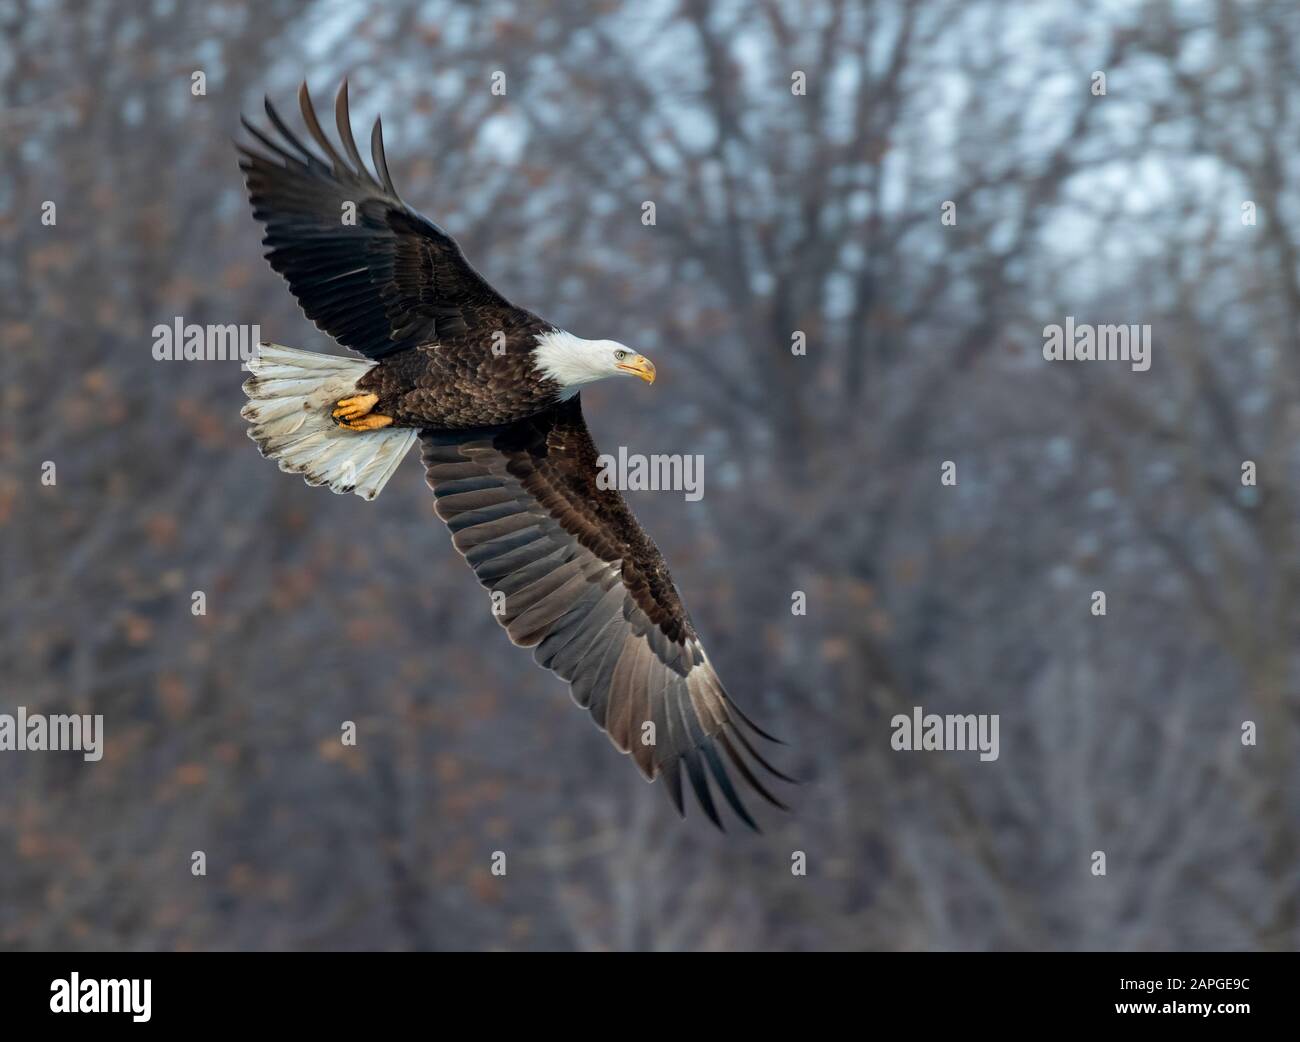 Bald eagle (Haliaeetus leucocephalus) flying through winter forest, Saylorville, Iowa, USA Stock Photo